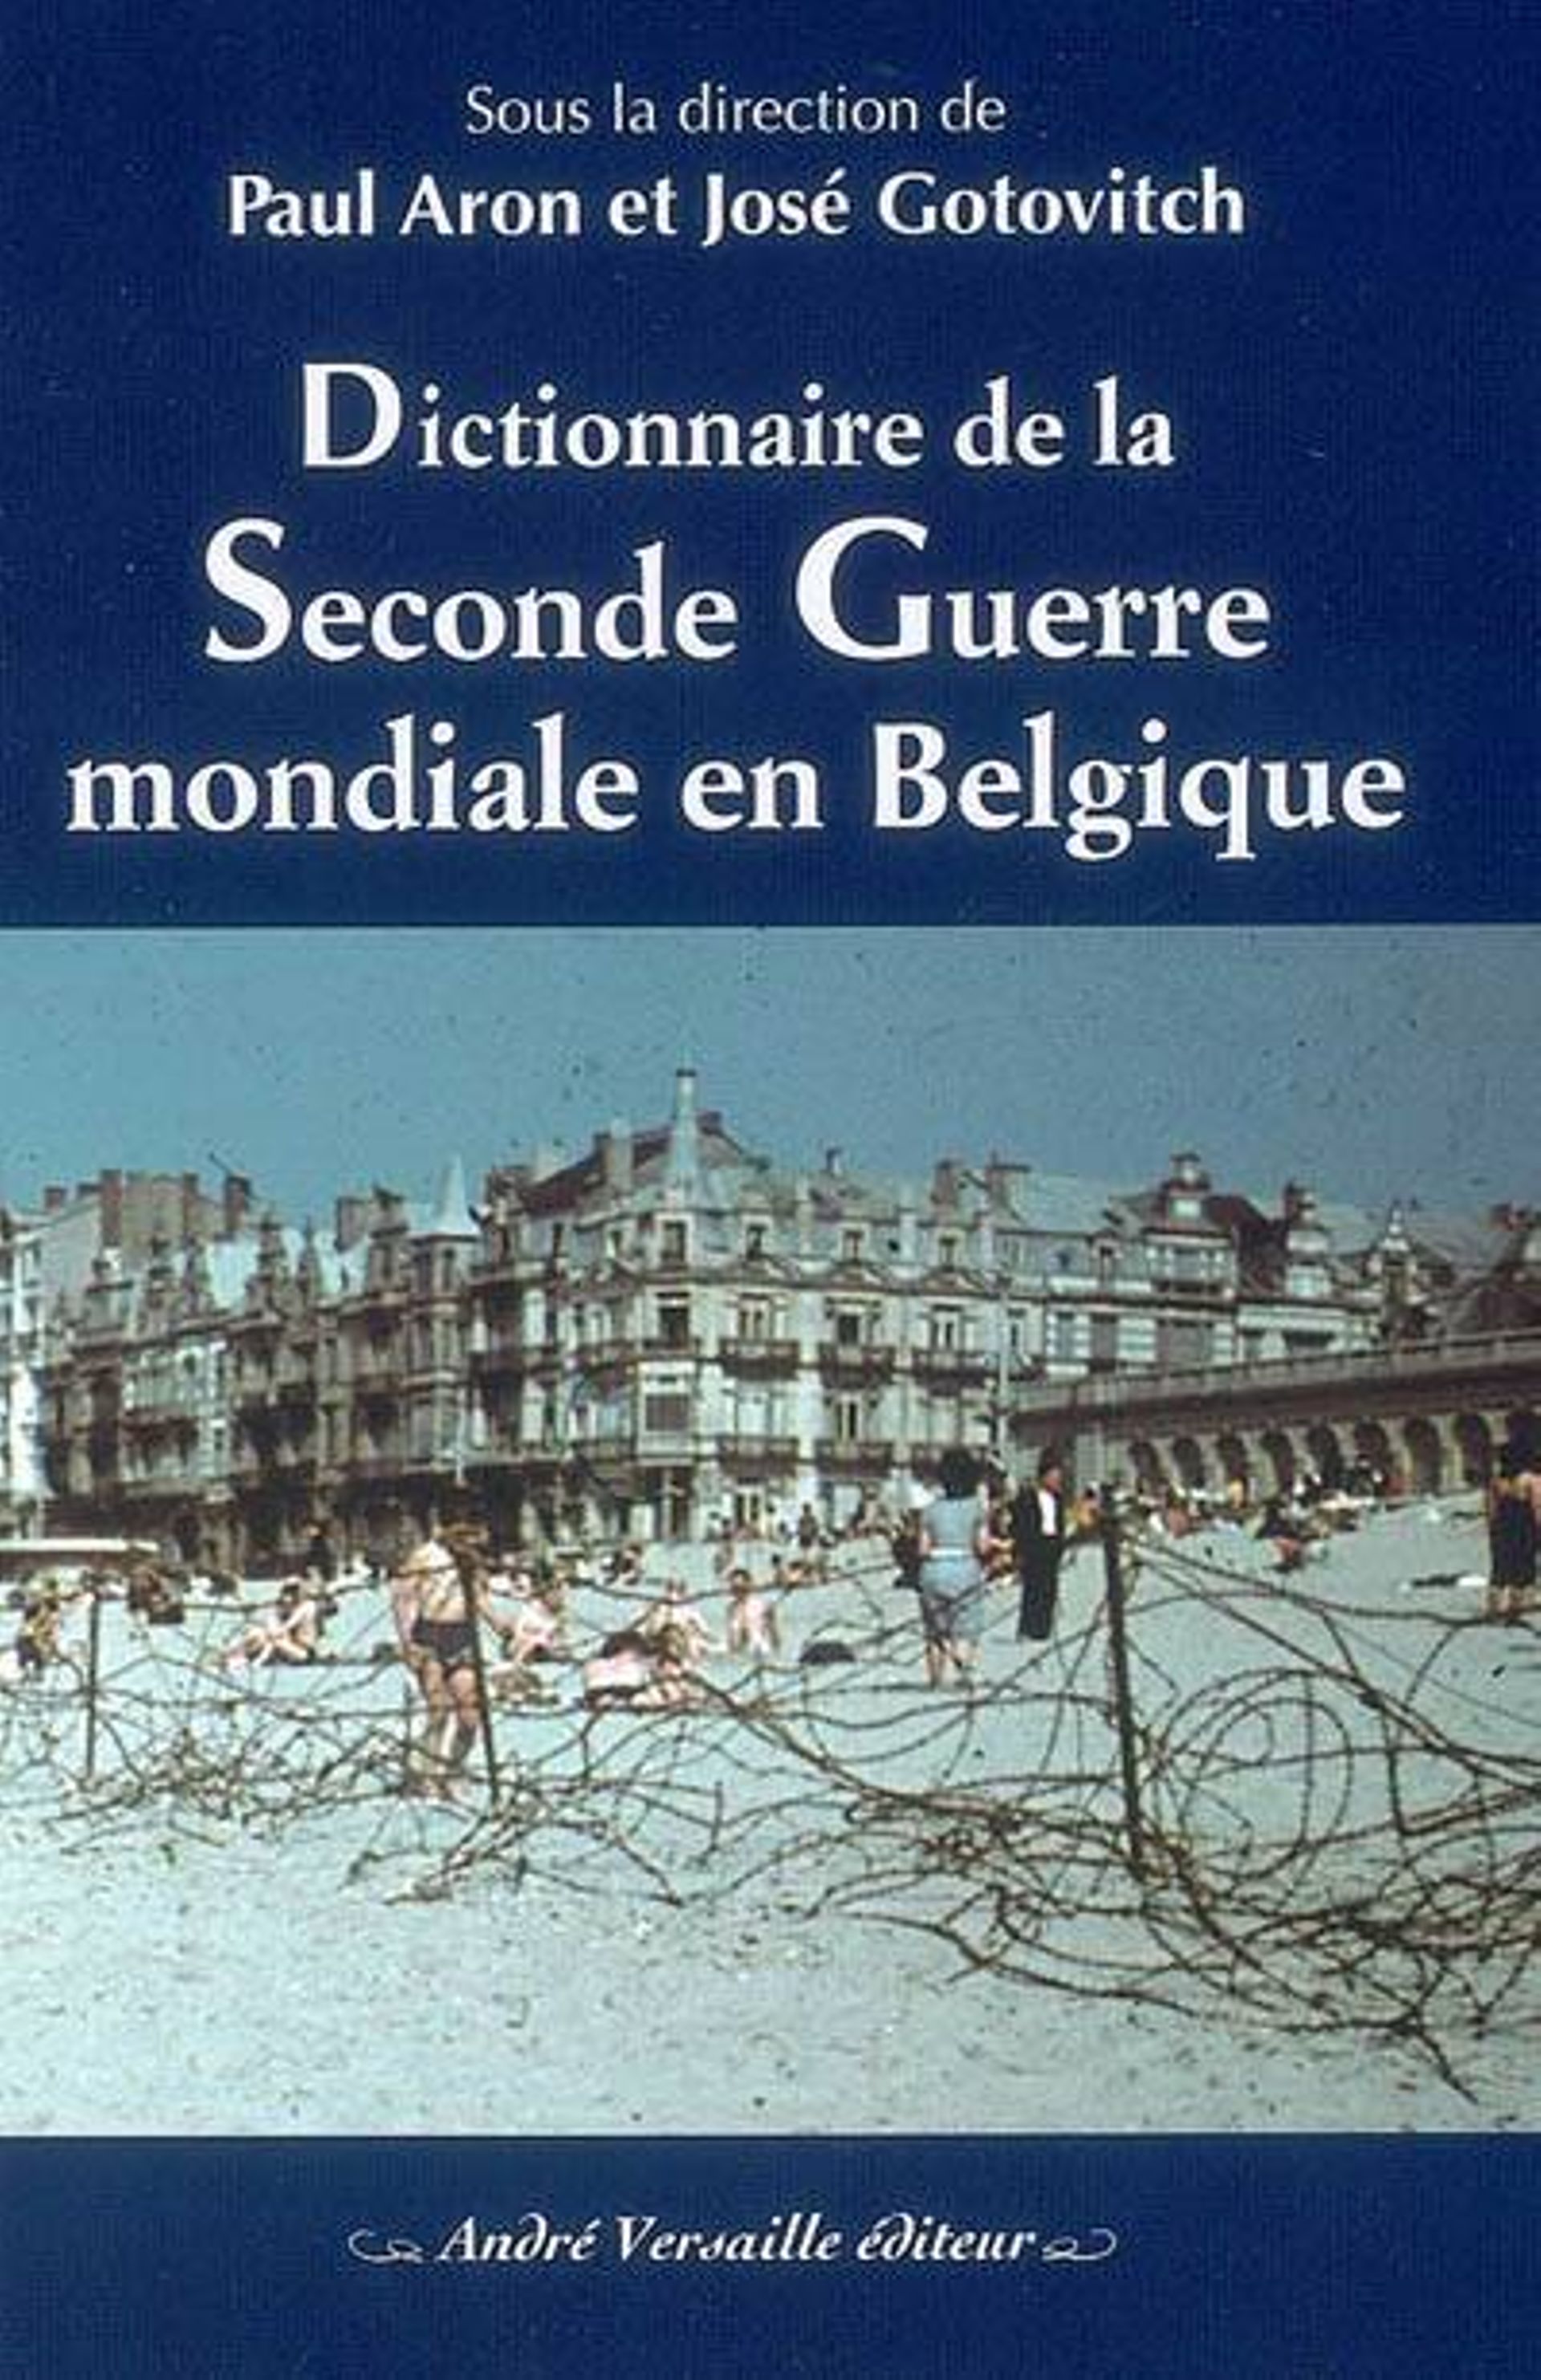 Dictionnaire de la Seconde Guerre mondiale en Belgique. André Versaille éditeur.